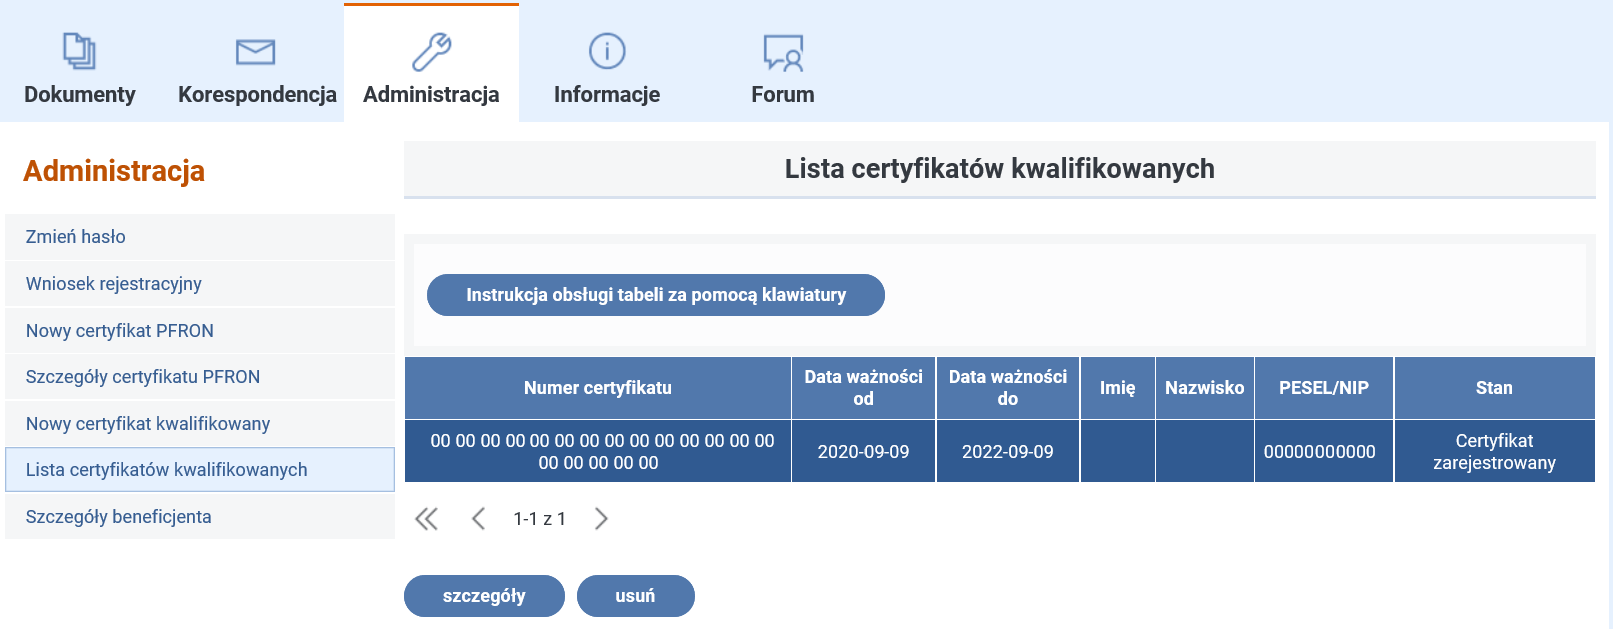 Widok ekranu po wyborze funkcji ‘Lista certyfikatów kwalifikowanych’.